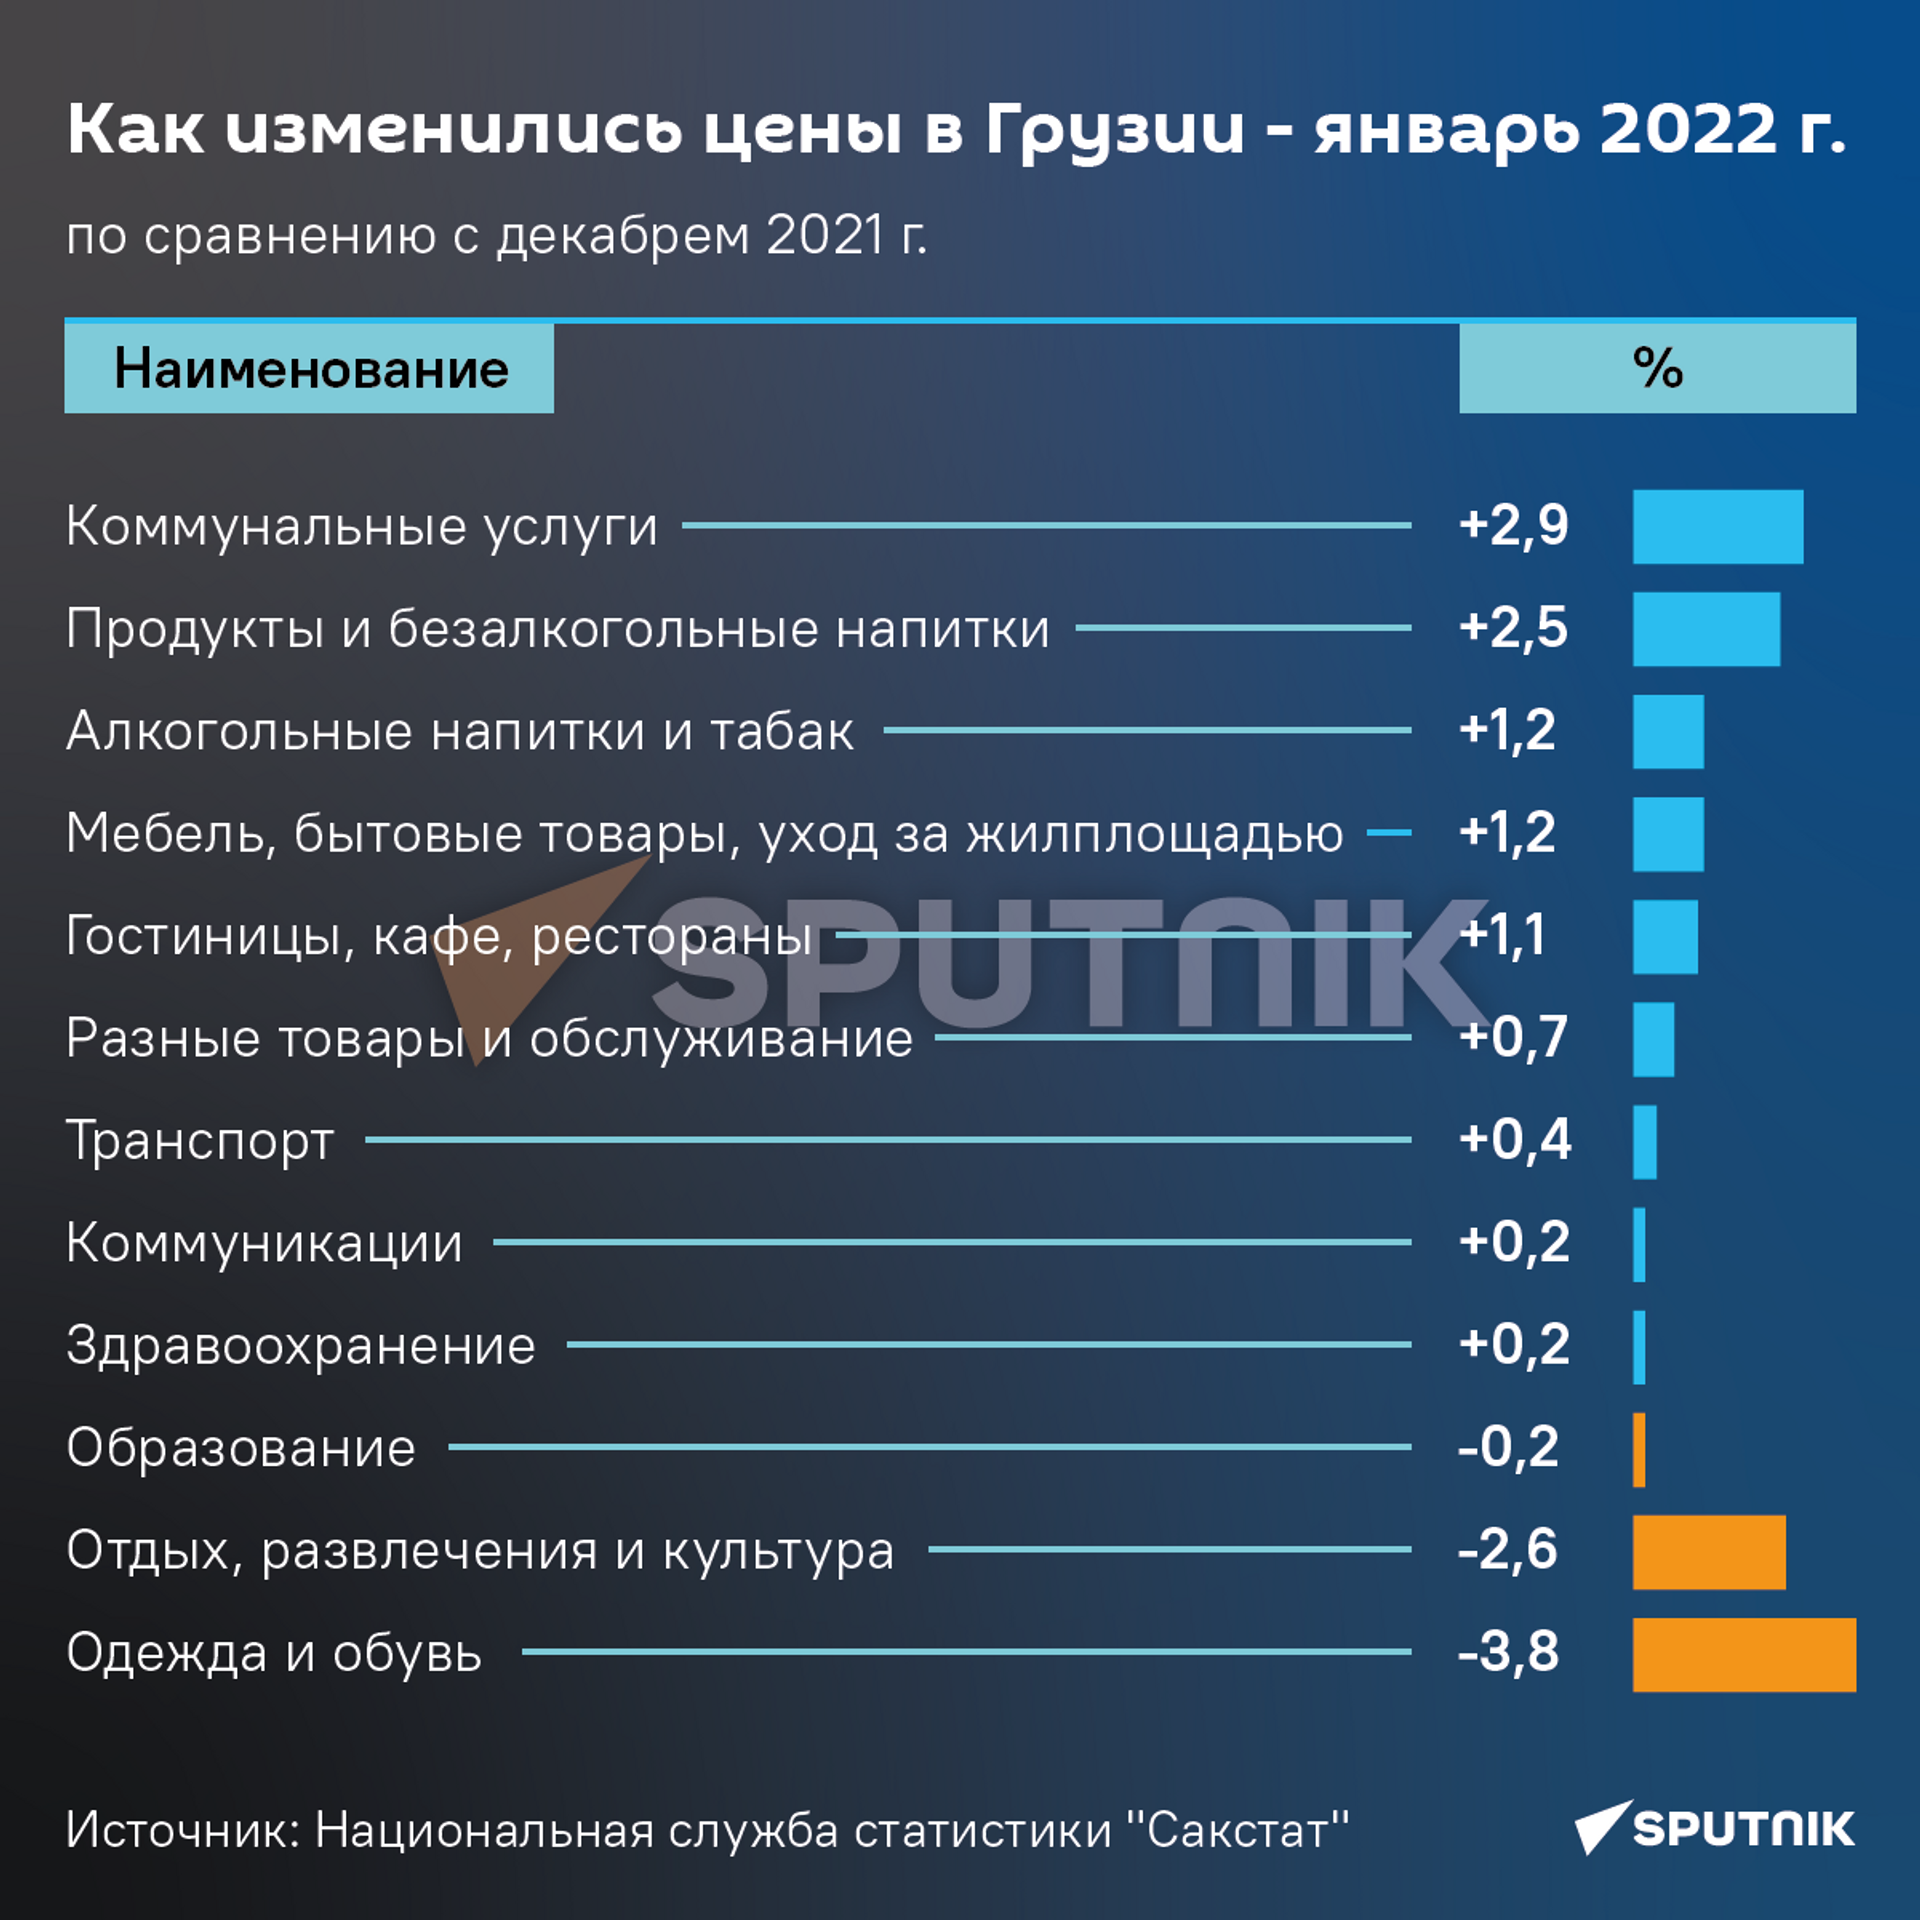 Как изменились цены в Грузии - январь 2022 года к декабрю 2021 года - Sputnik Грузия, 1920, 04.02.2022